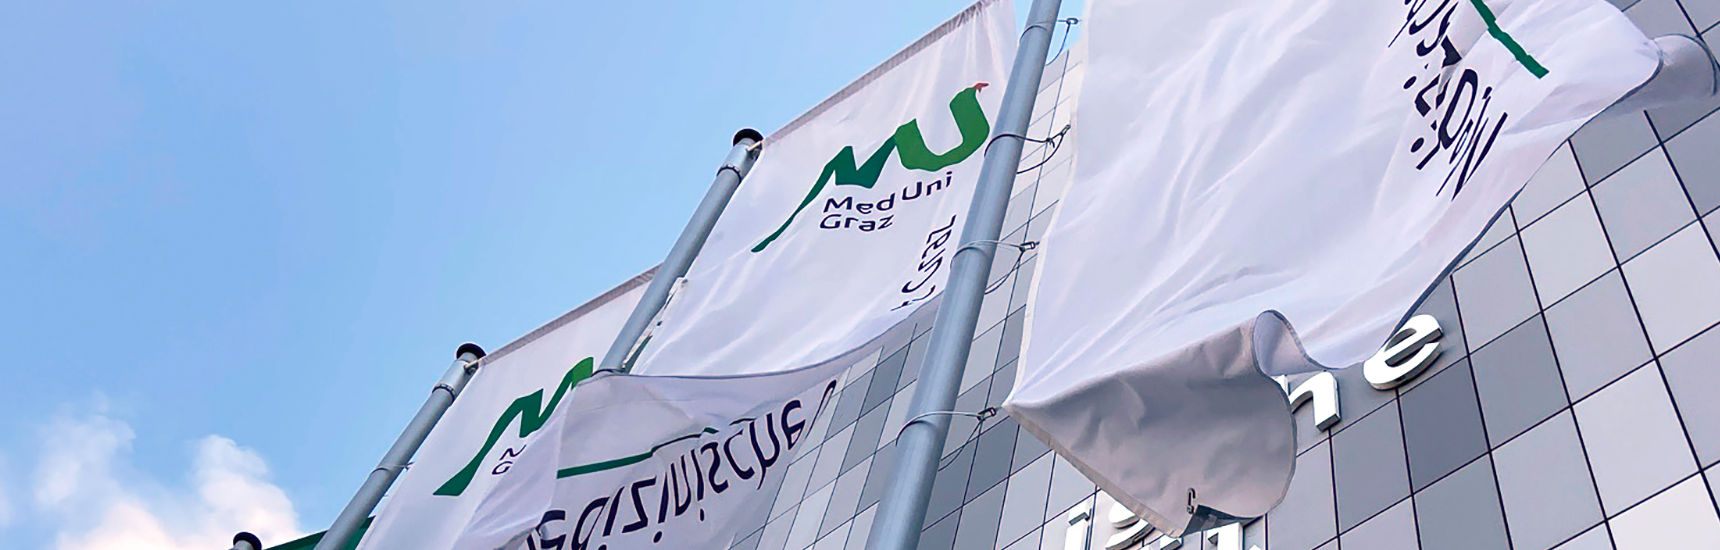 Campus der Med Uni Graz